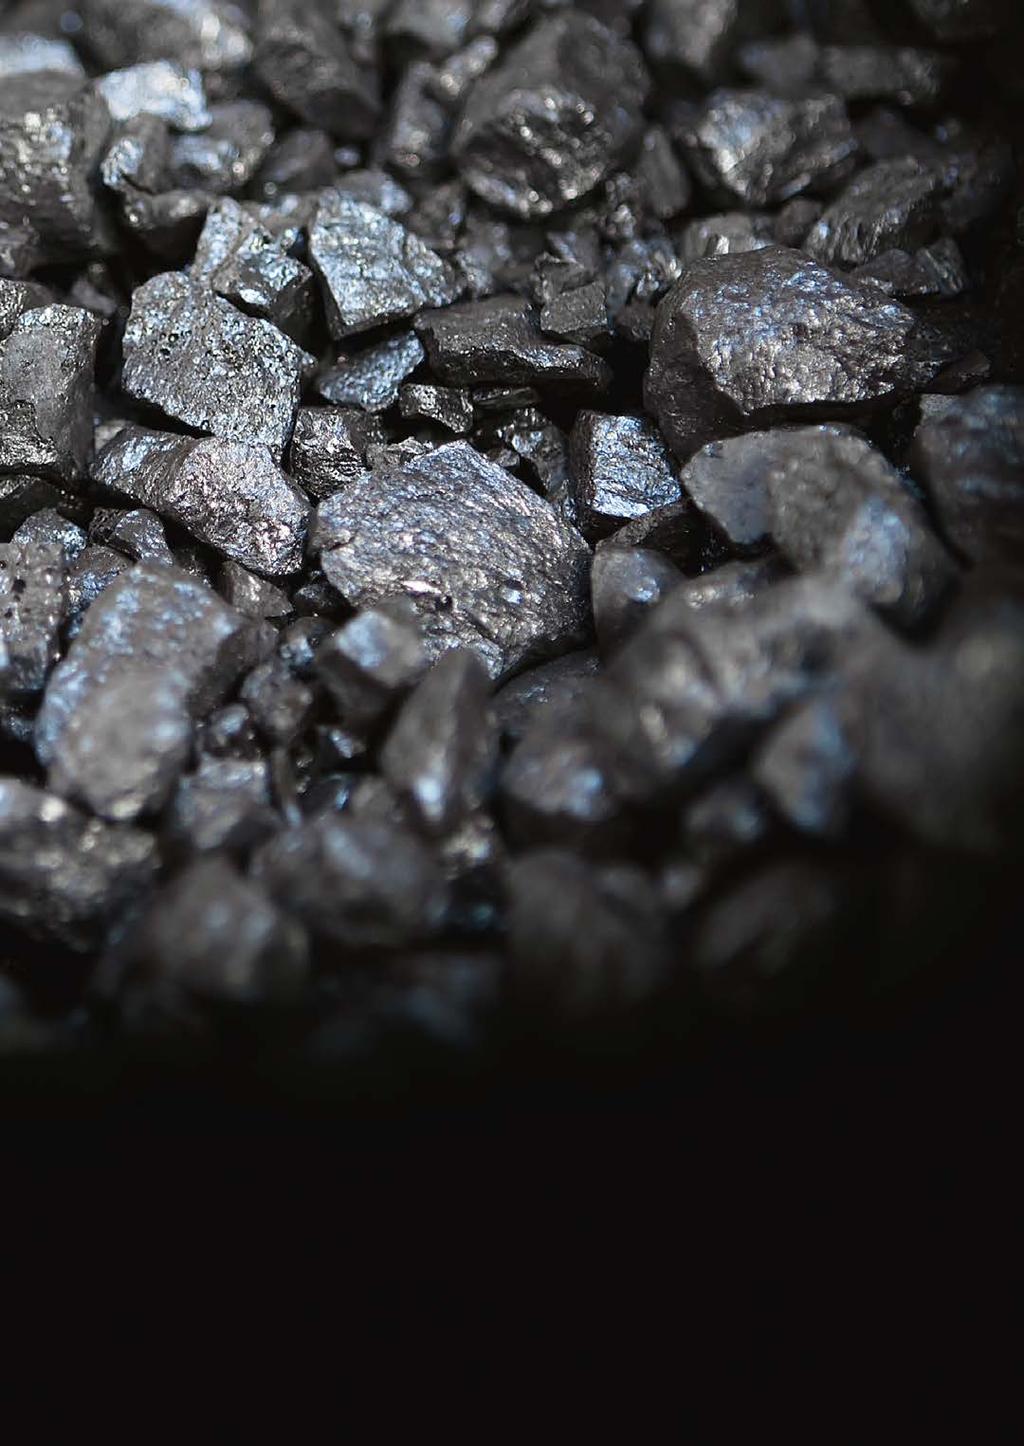 Nordic Iron Ore är ett gruvutvecklingsbolag i södra Dalarna med huvudambitionen att återuppta gruvdriften i Ludvika Gruvor bestående av de tidigare verksamma gruvorna Blötberget och Håksberg samt det